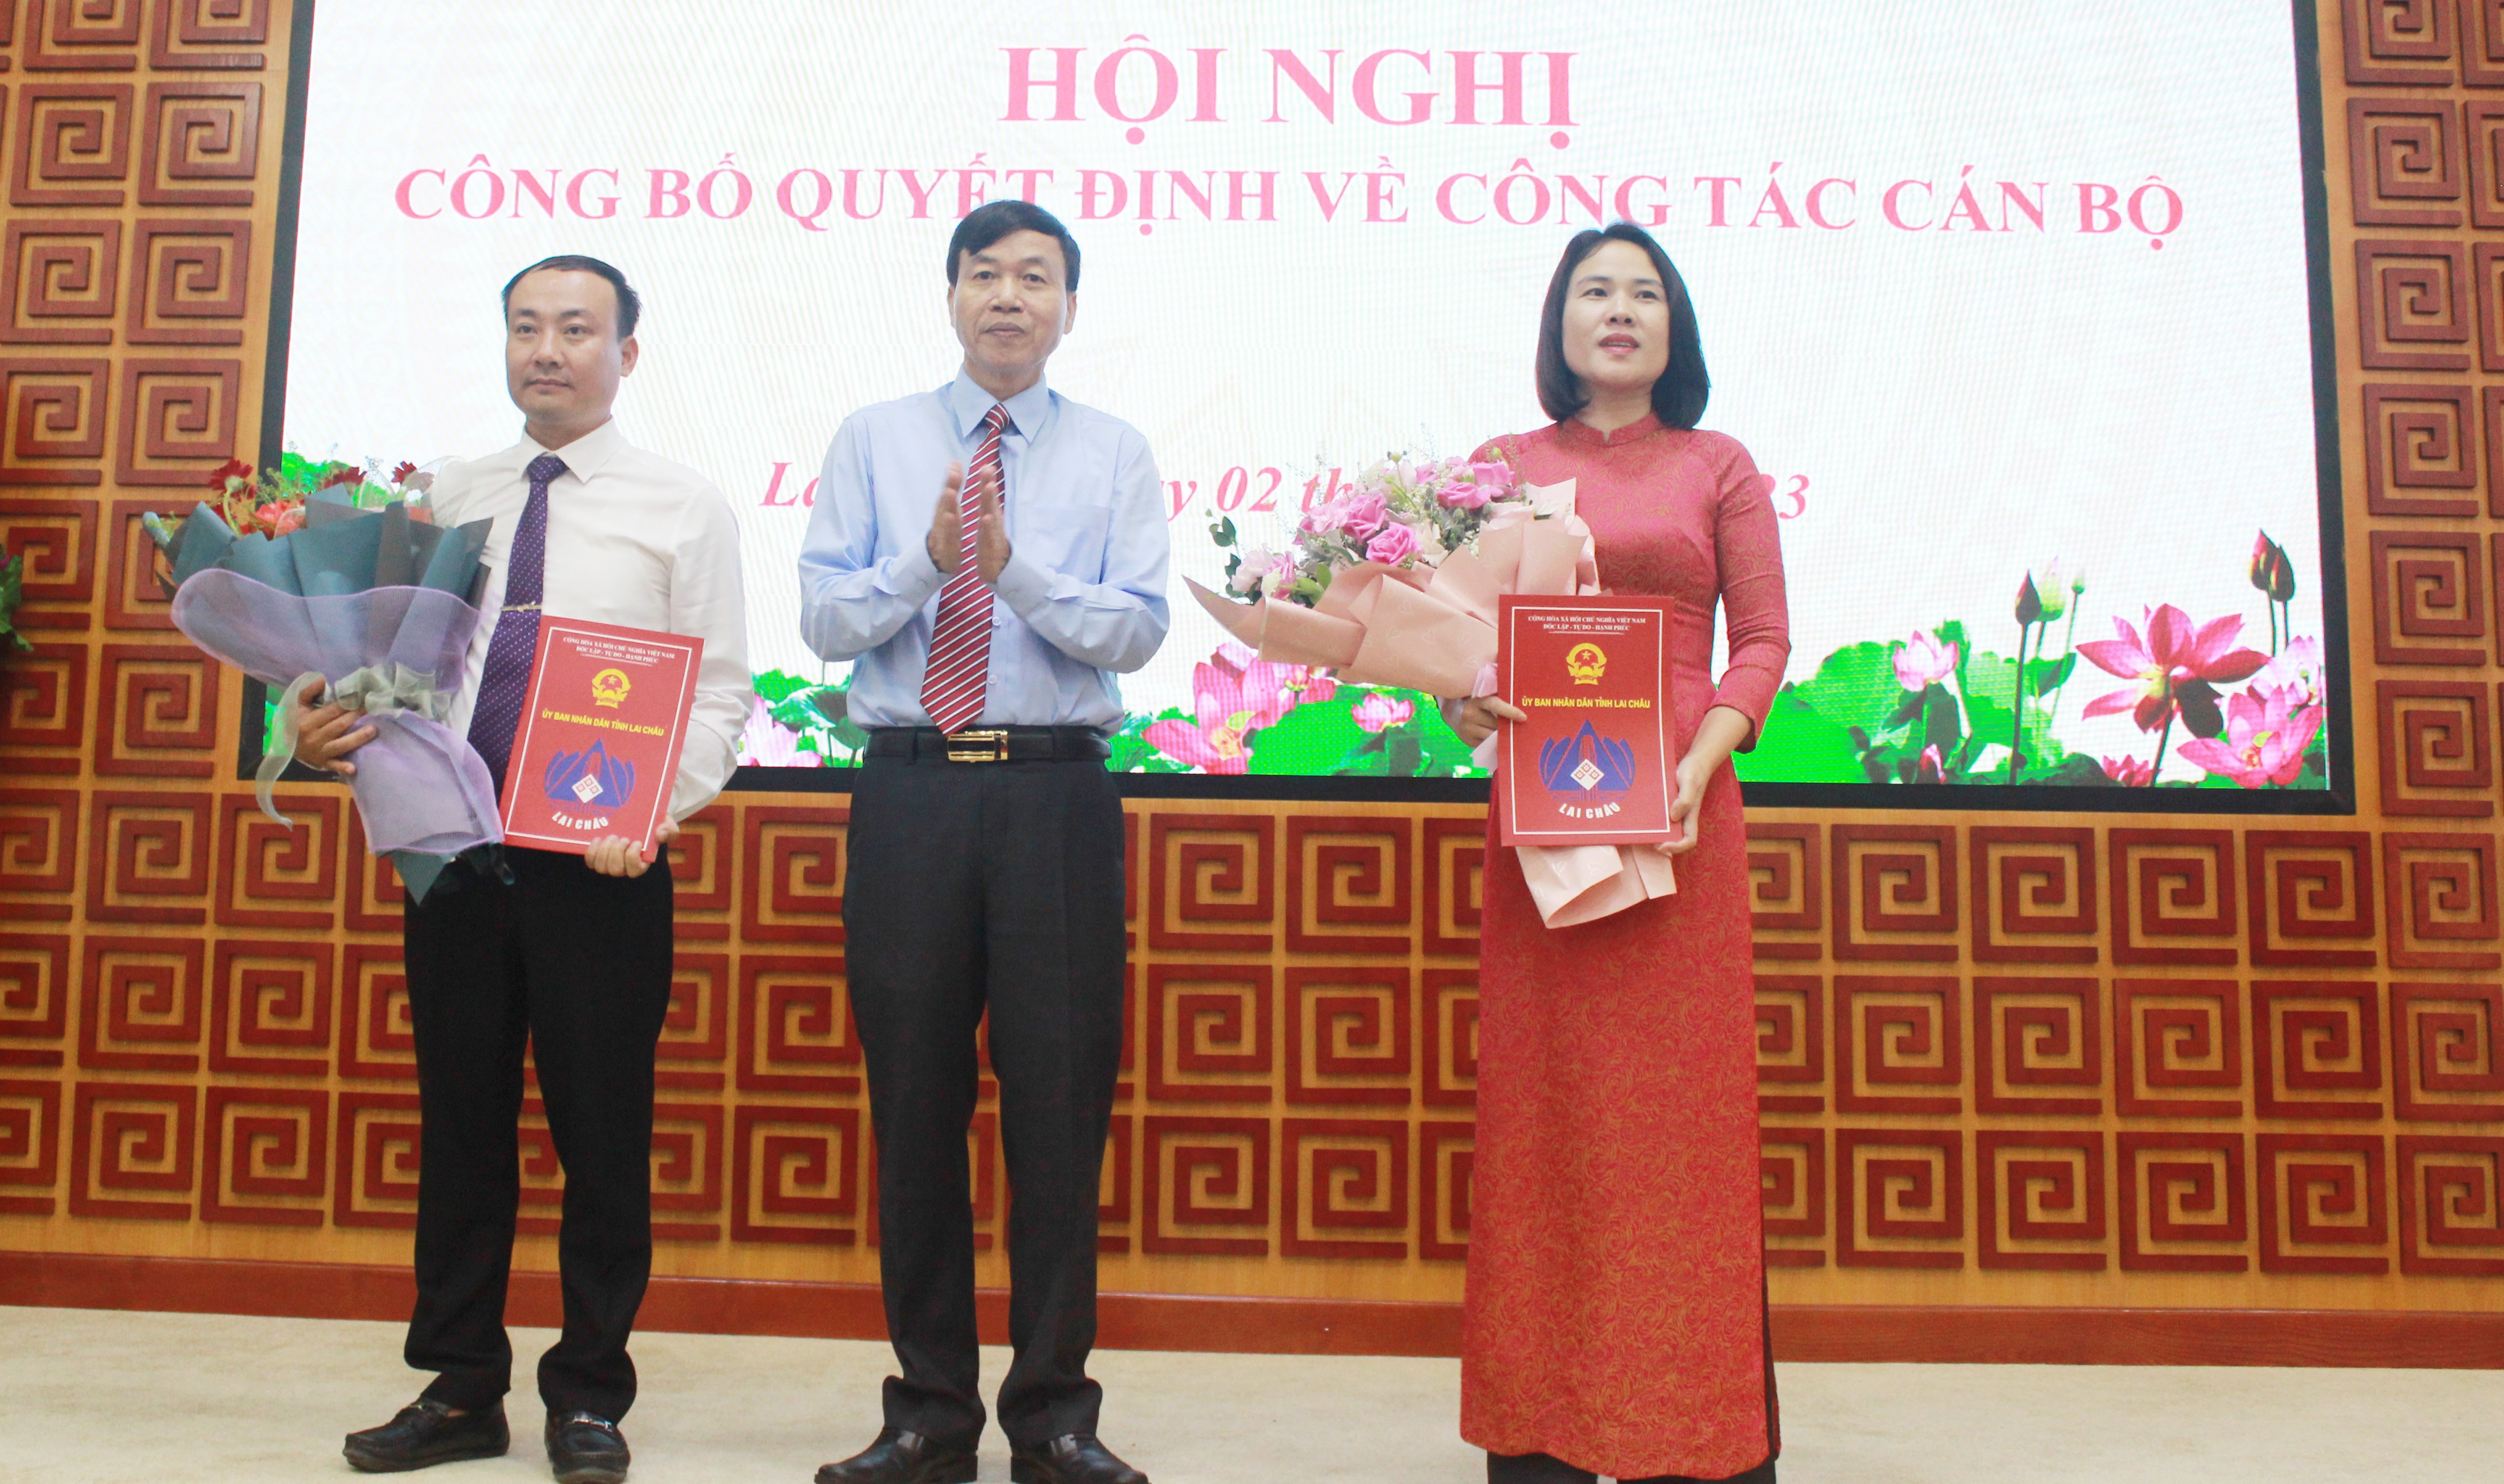 Đồng chí Lê Văn Lương - Phó Bí Thư Tỉnh ủy, Chủ tịch UBND tỉnh trao quyết định bổ nhiệm; tặng hoa chúc mừng đồng cho Đào Thị Lan Anh và Trịnh Quang Anh